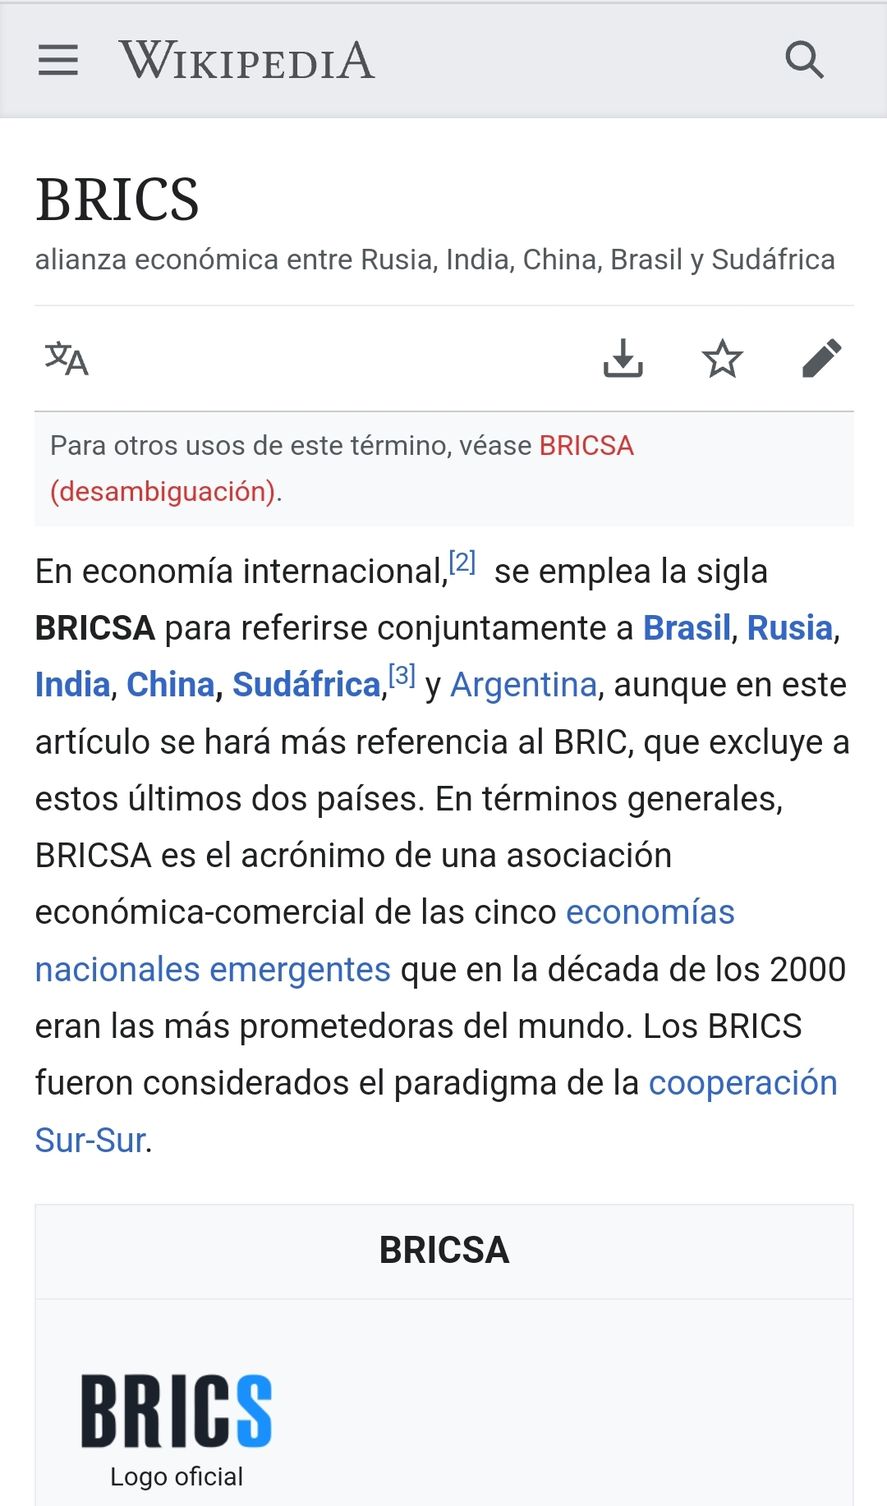 En el sitio Wikipedia ya aparece Argentina como miembro del BRICS